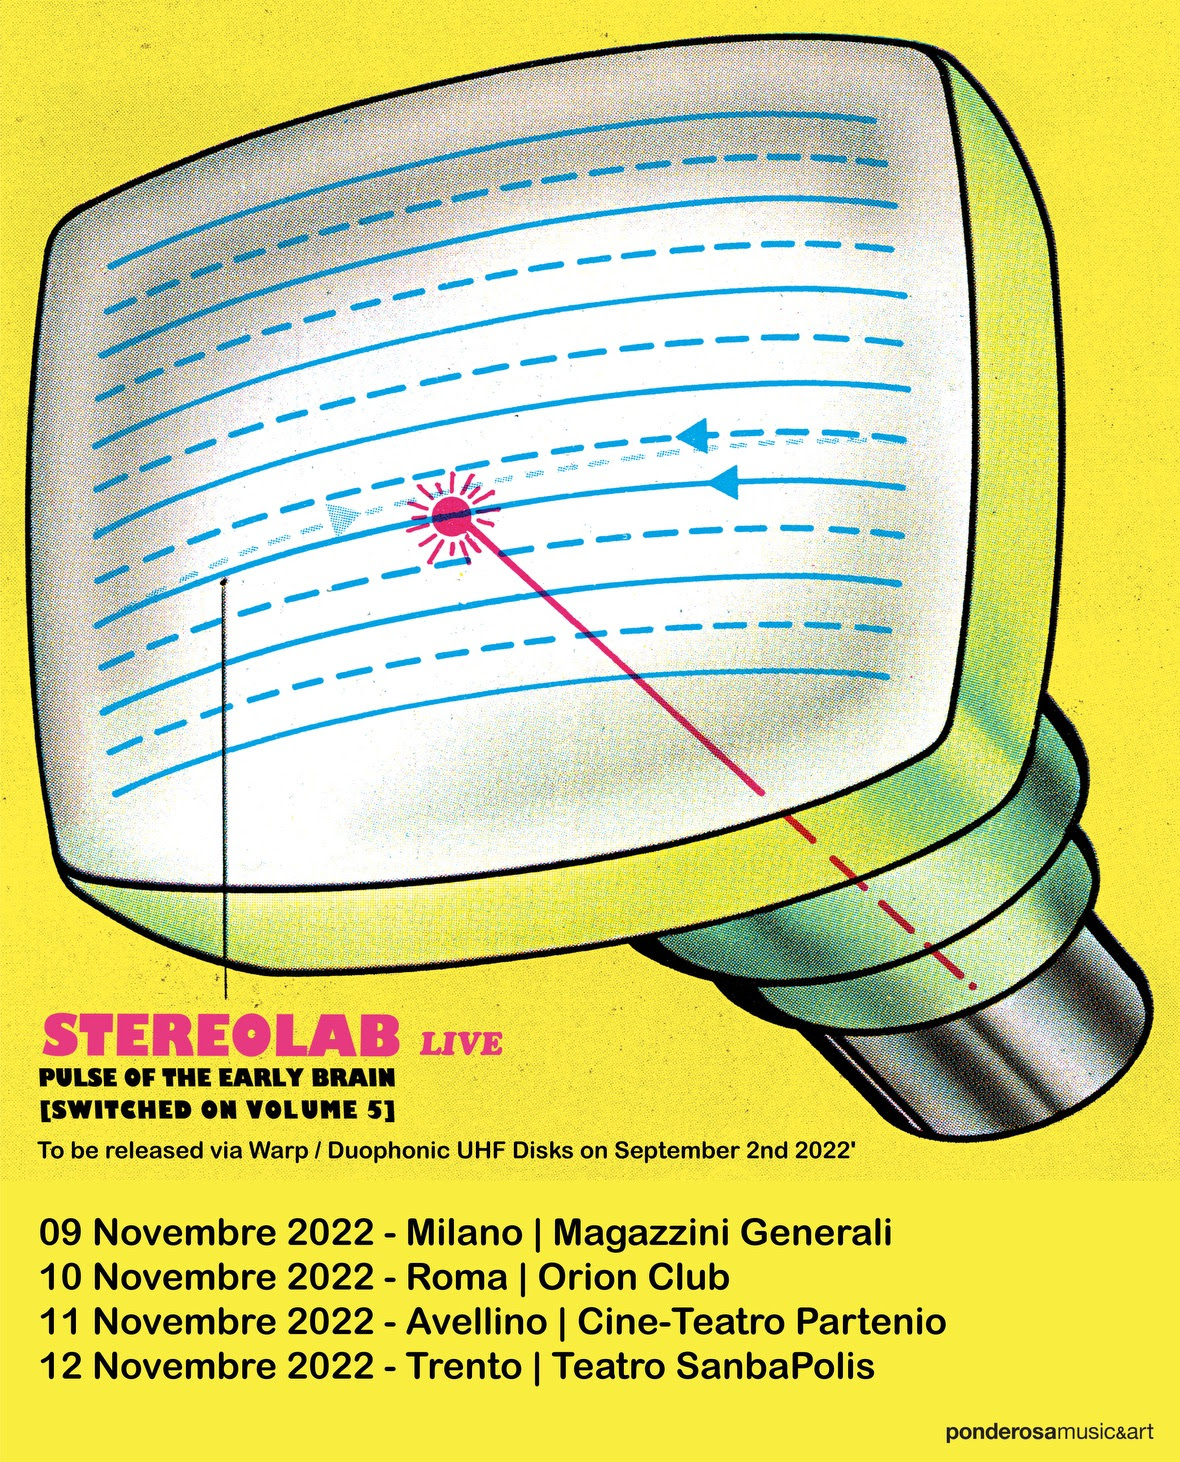 Tornano in Italia dopo 21 anni gli Stereolab